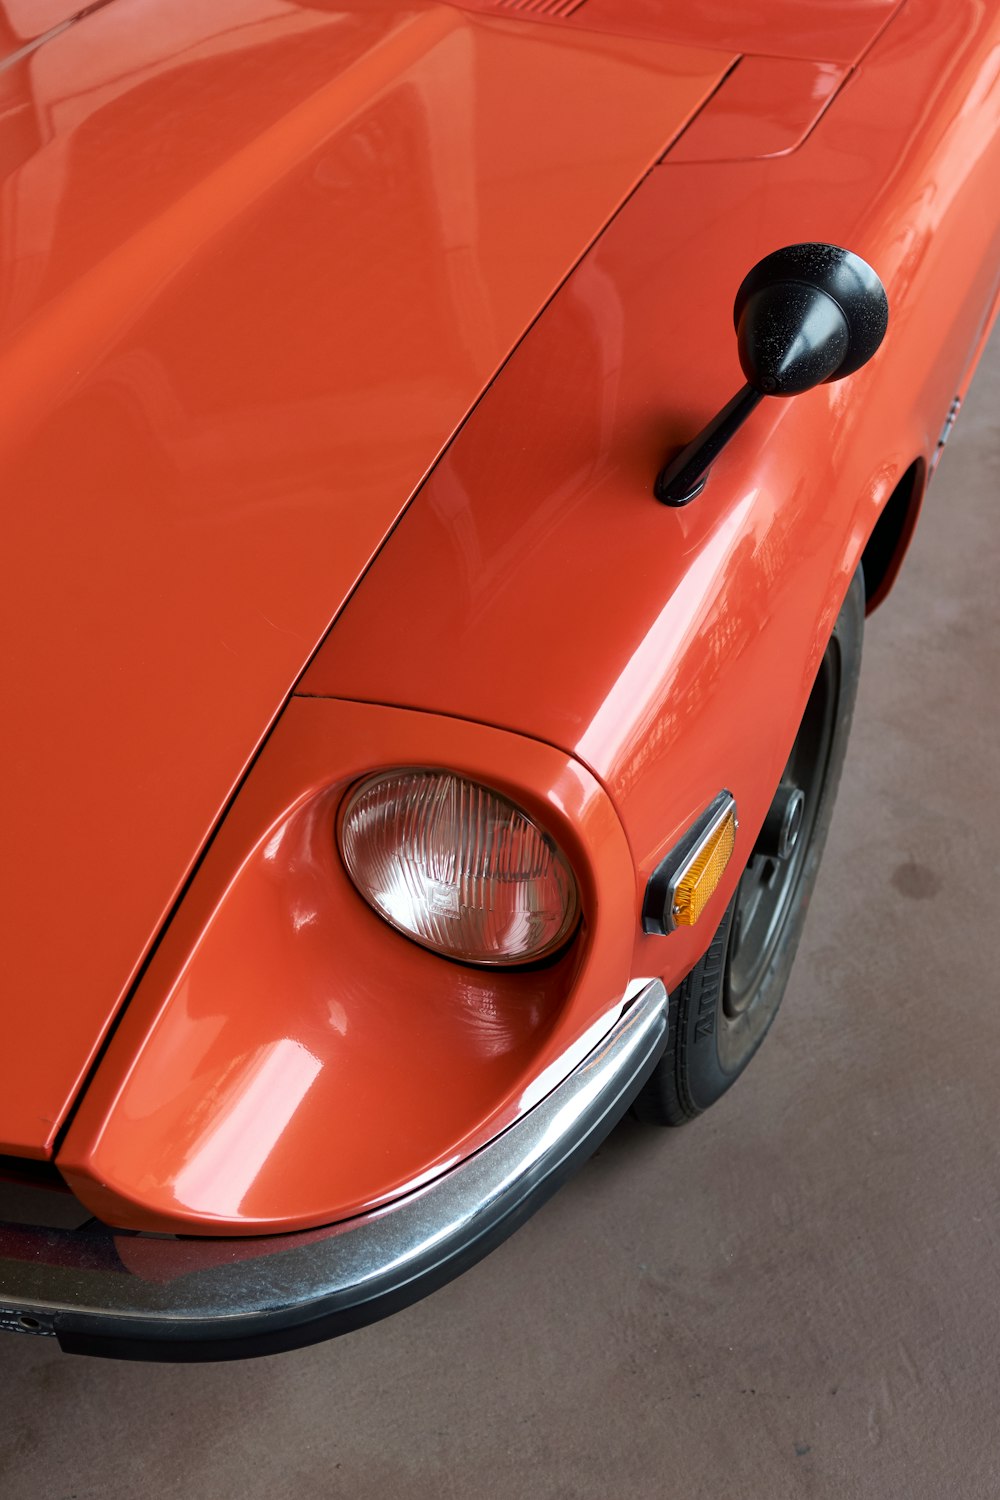 an orange sports car parked in a garage